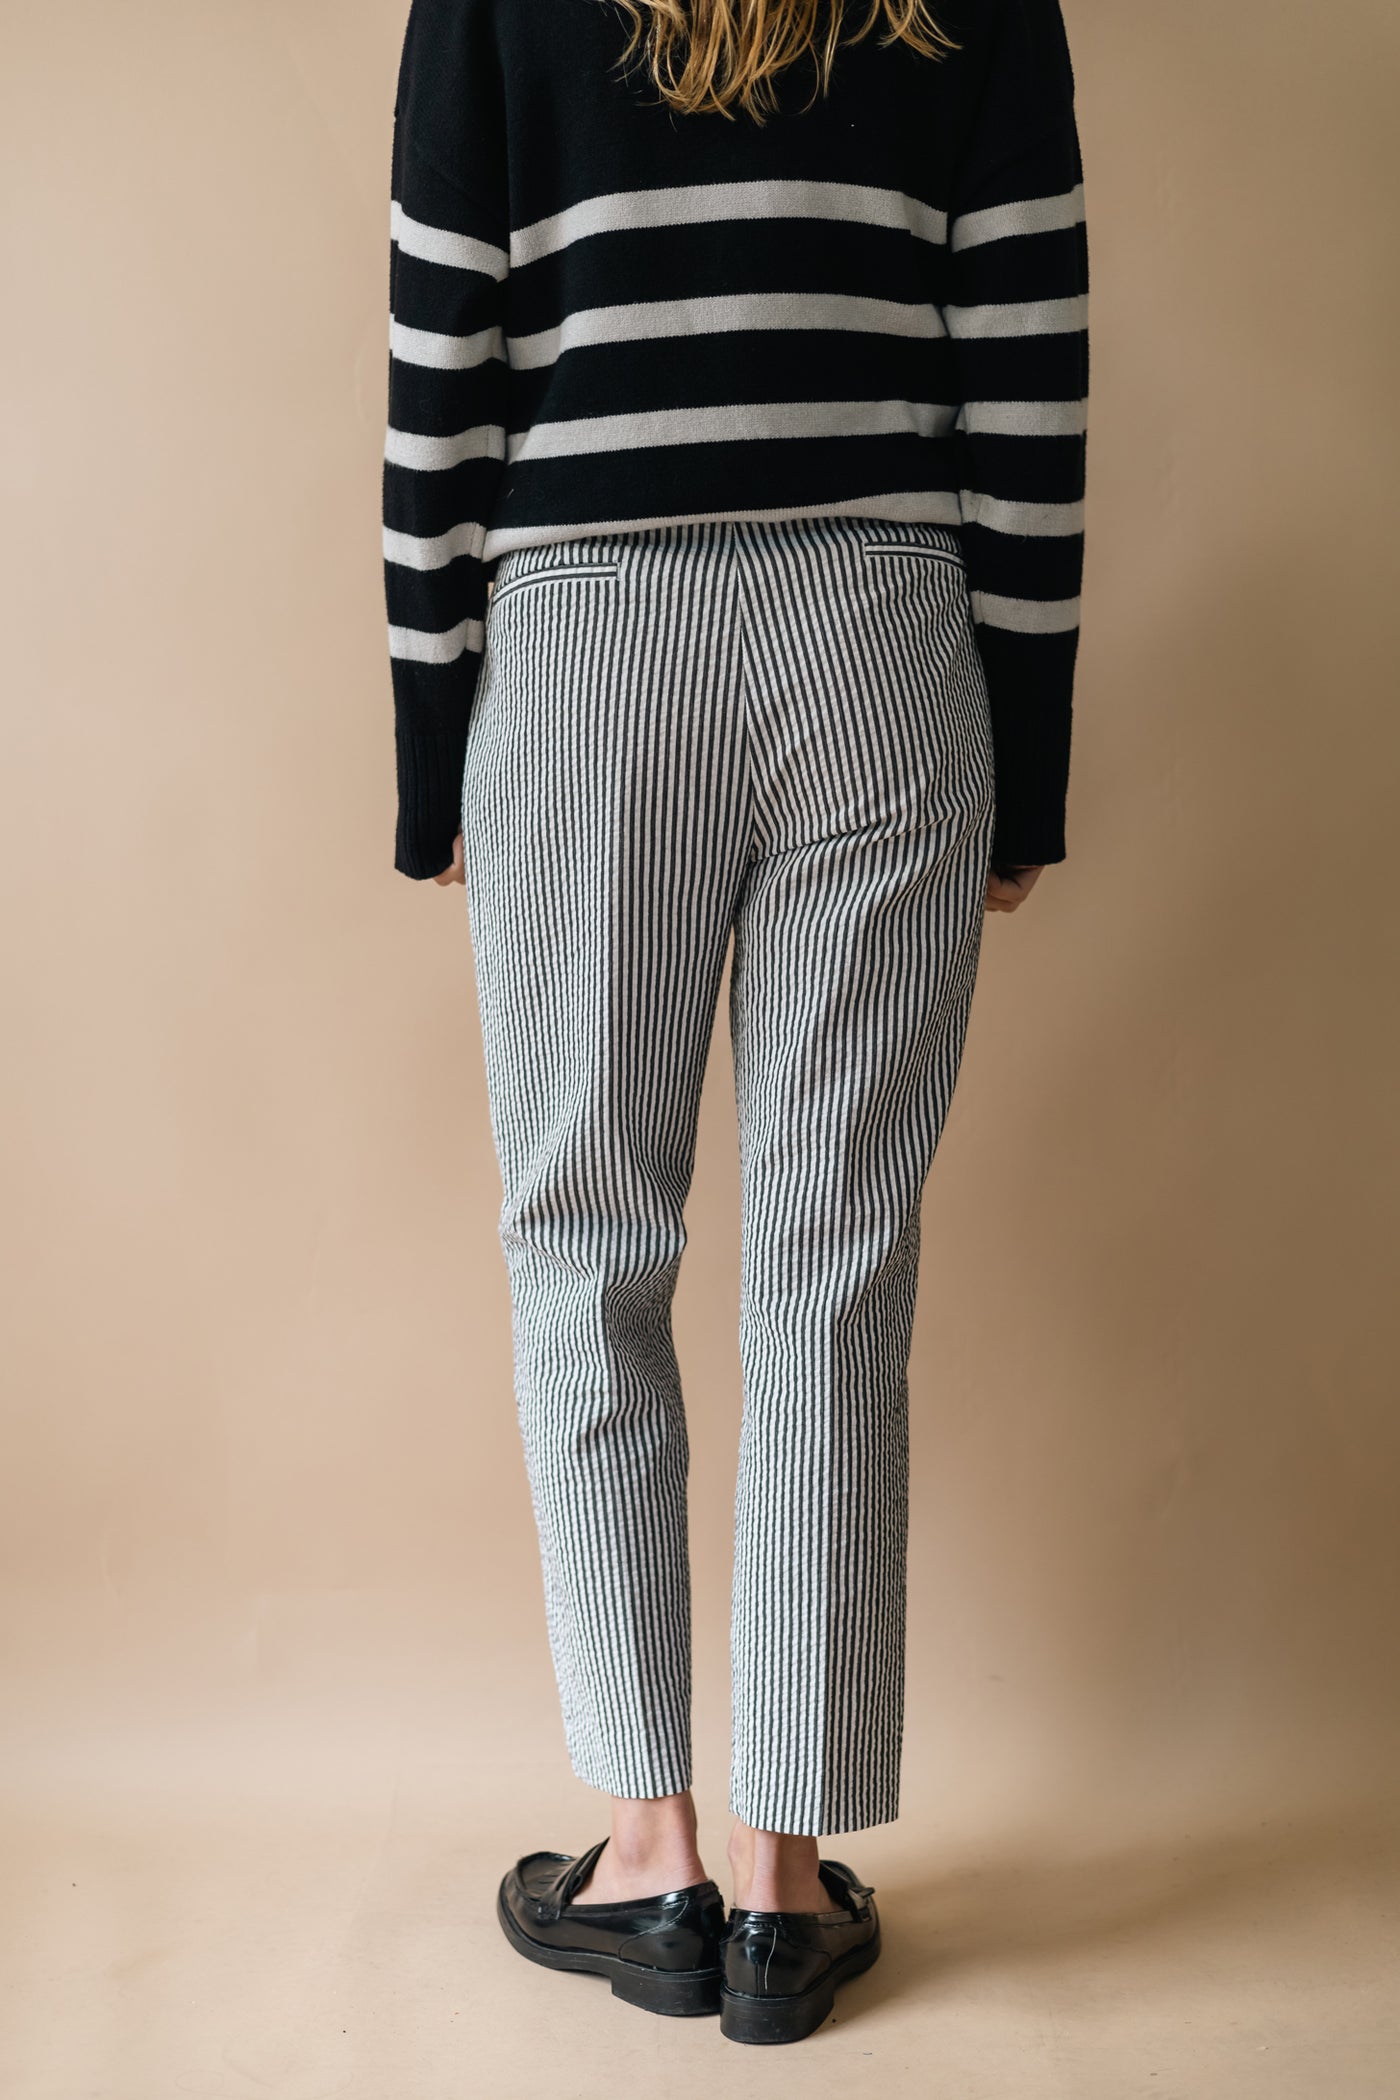 Pantalon - Pièce Unique N°3914